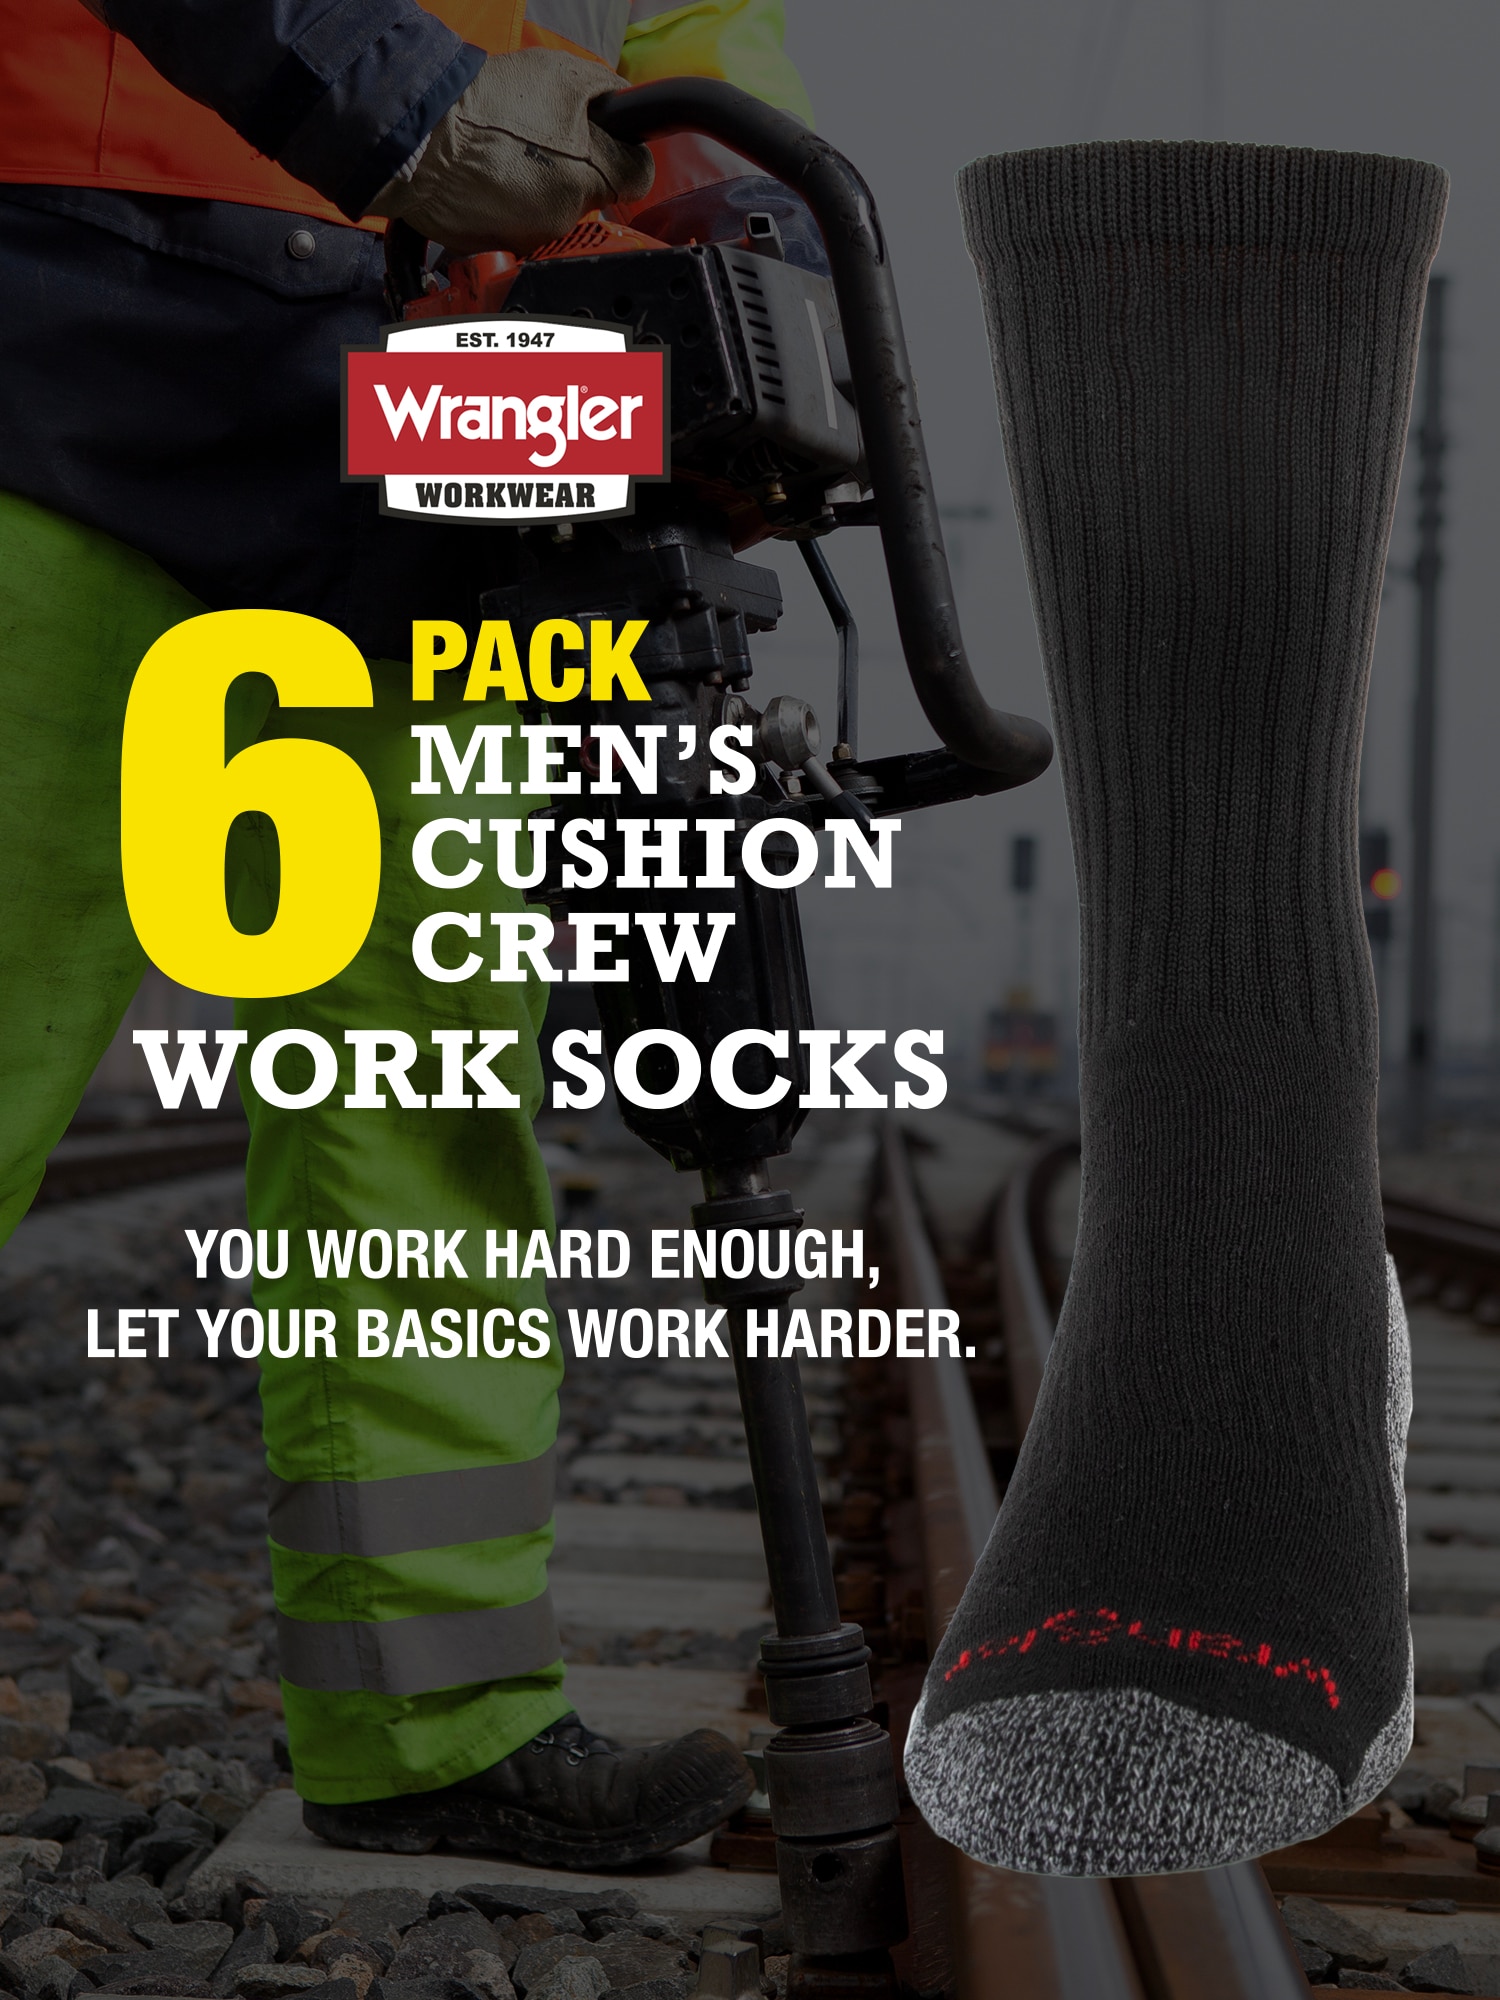 Wrangler Men's Cushion Crew Works Socks, 6 pack